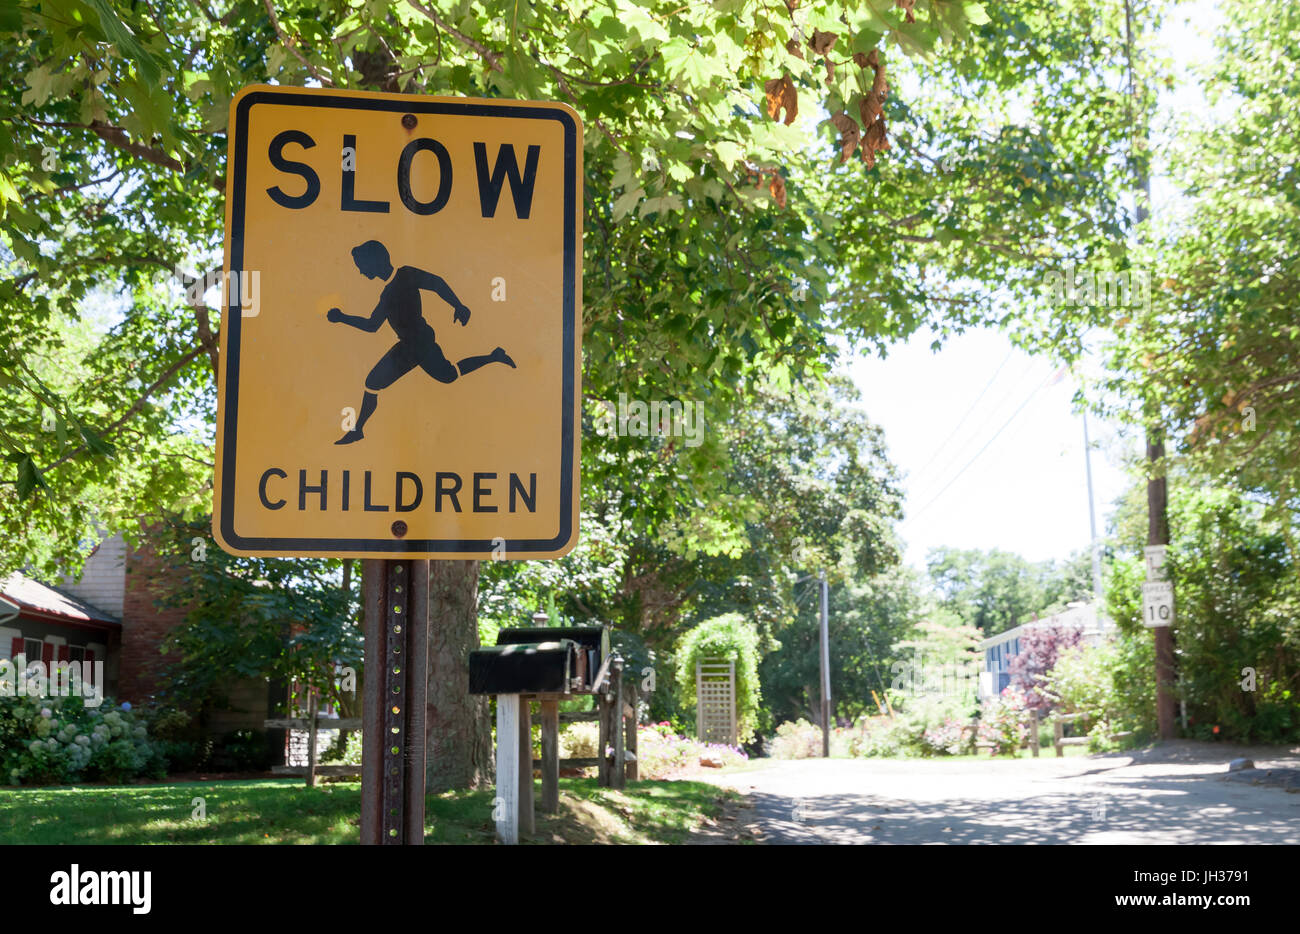 Rallentare i bambini segno di avvertimento invitando gli automobilisti a rallentare. Foto Stock